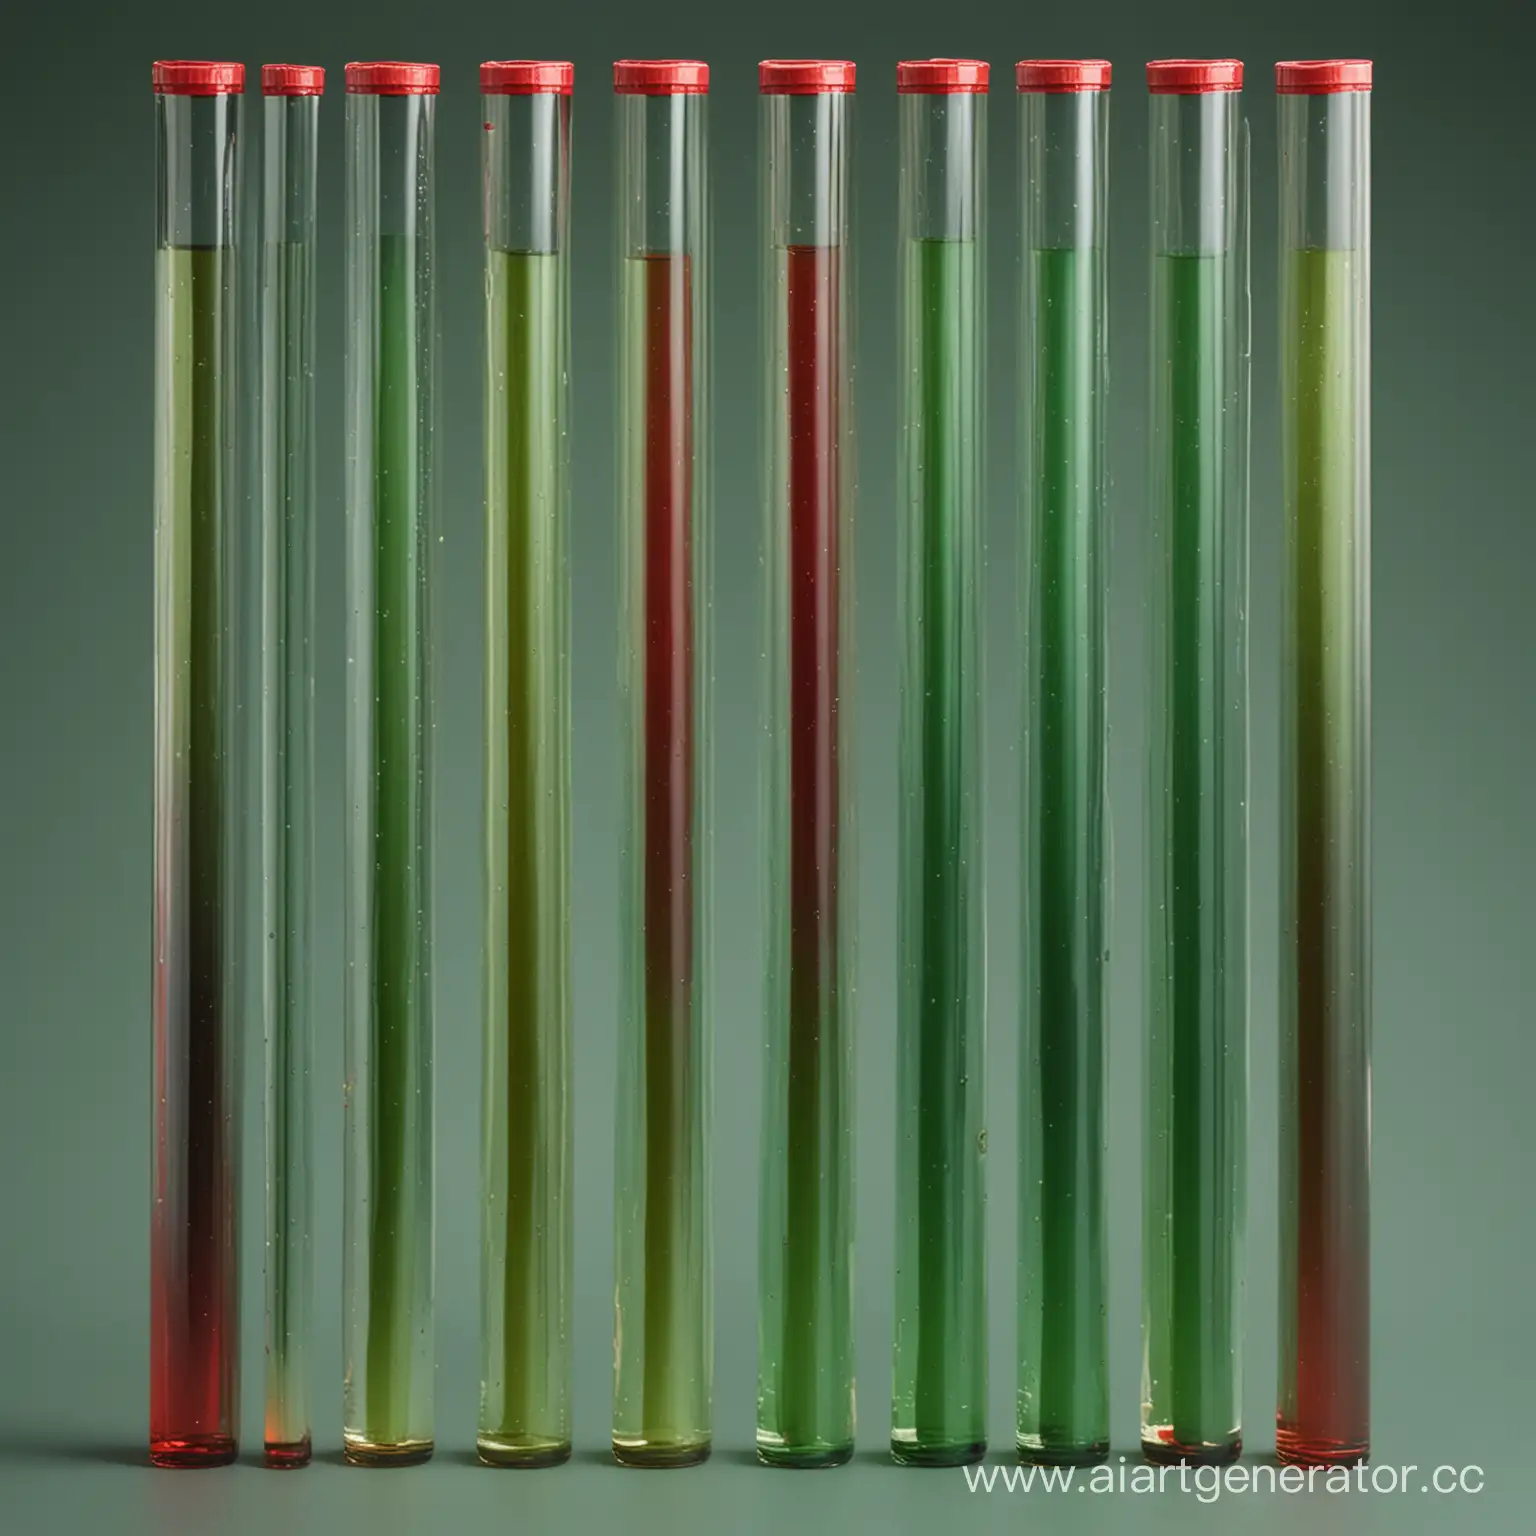 восемь ровных трубок с жидкостью зеленого и красного цветов, заполненных последовательно, в разных пропорциях от большего к мменьшему